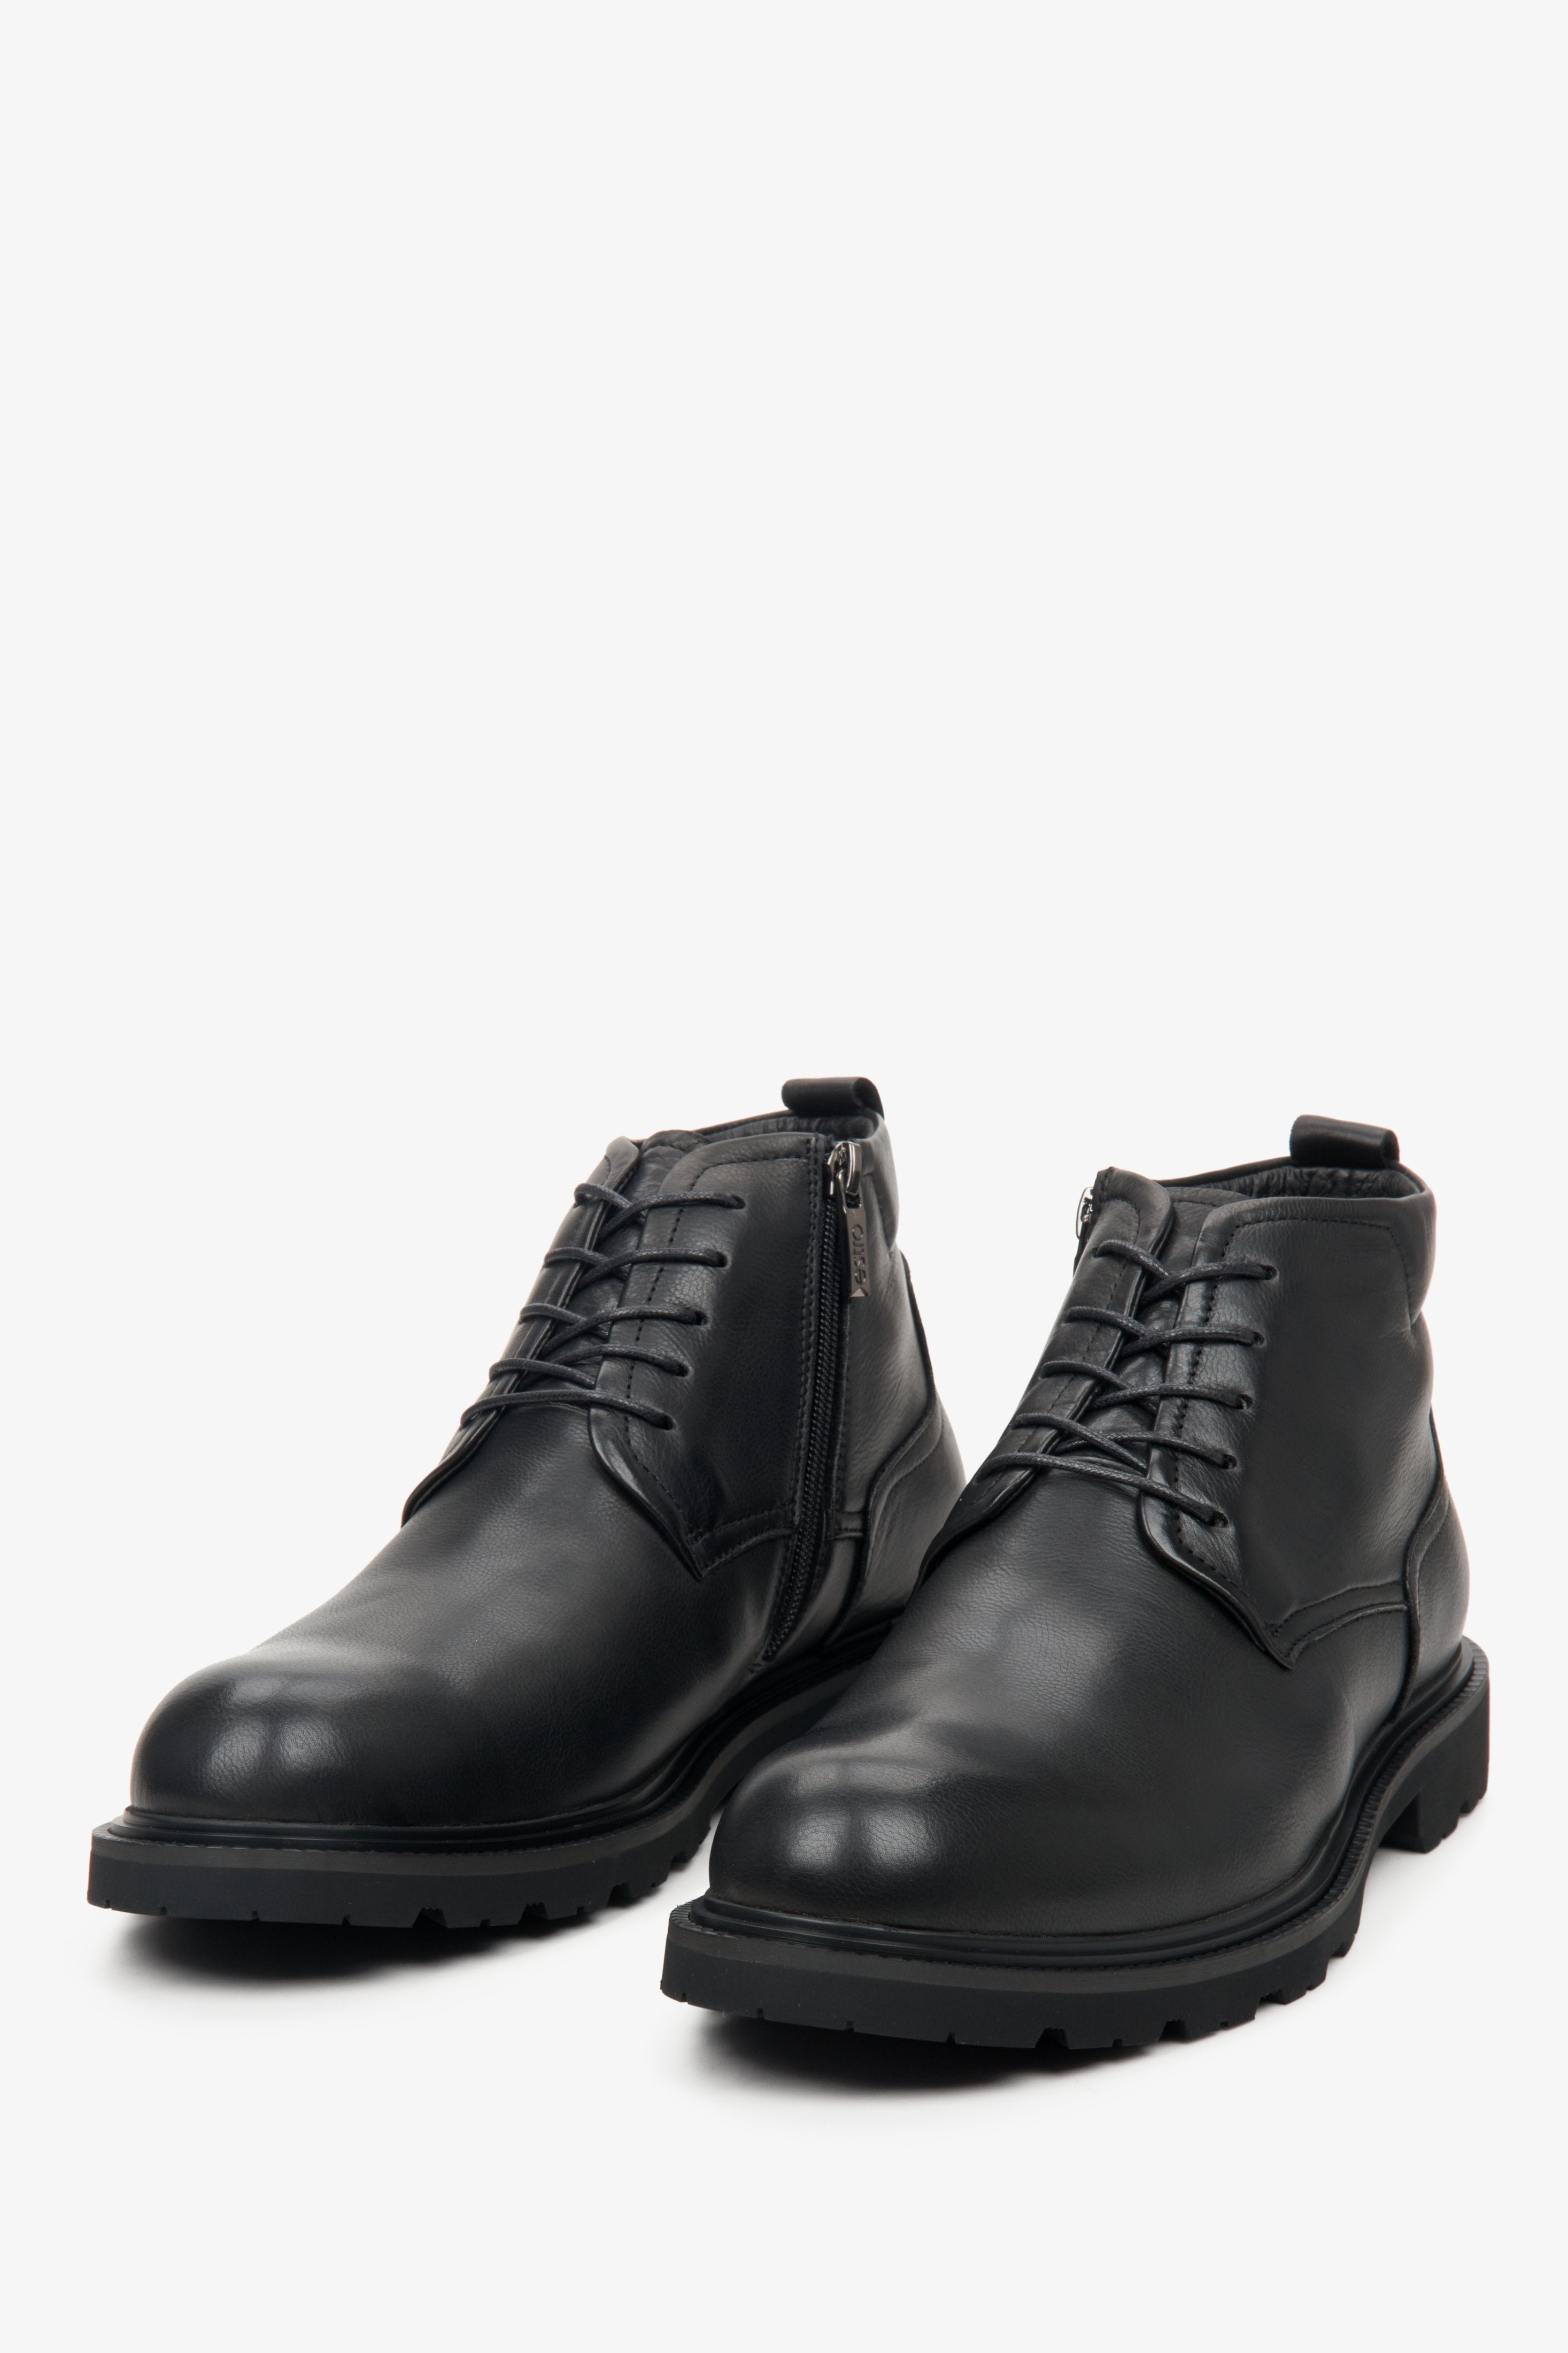 Skórzane zimowe botki męskie w kolorze czarnym Estro - zbliżenie na czubek buta.